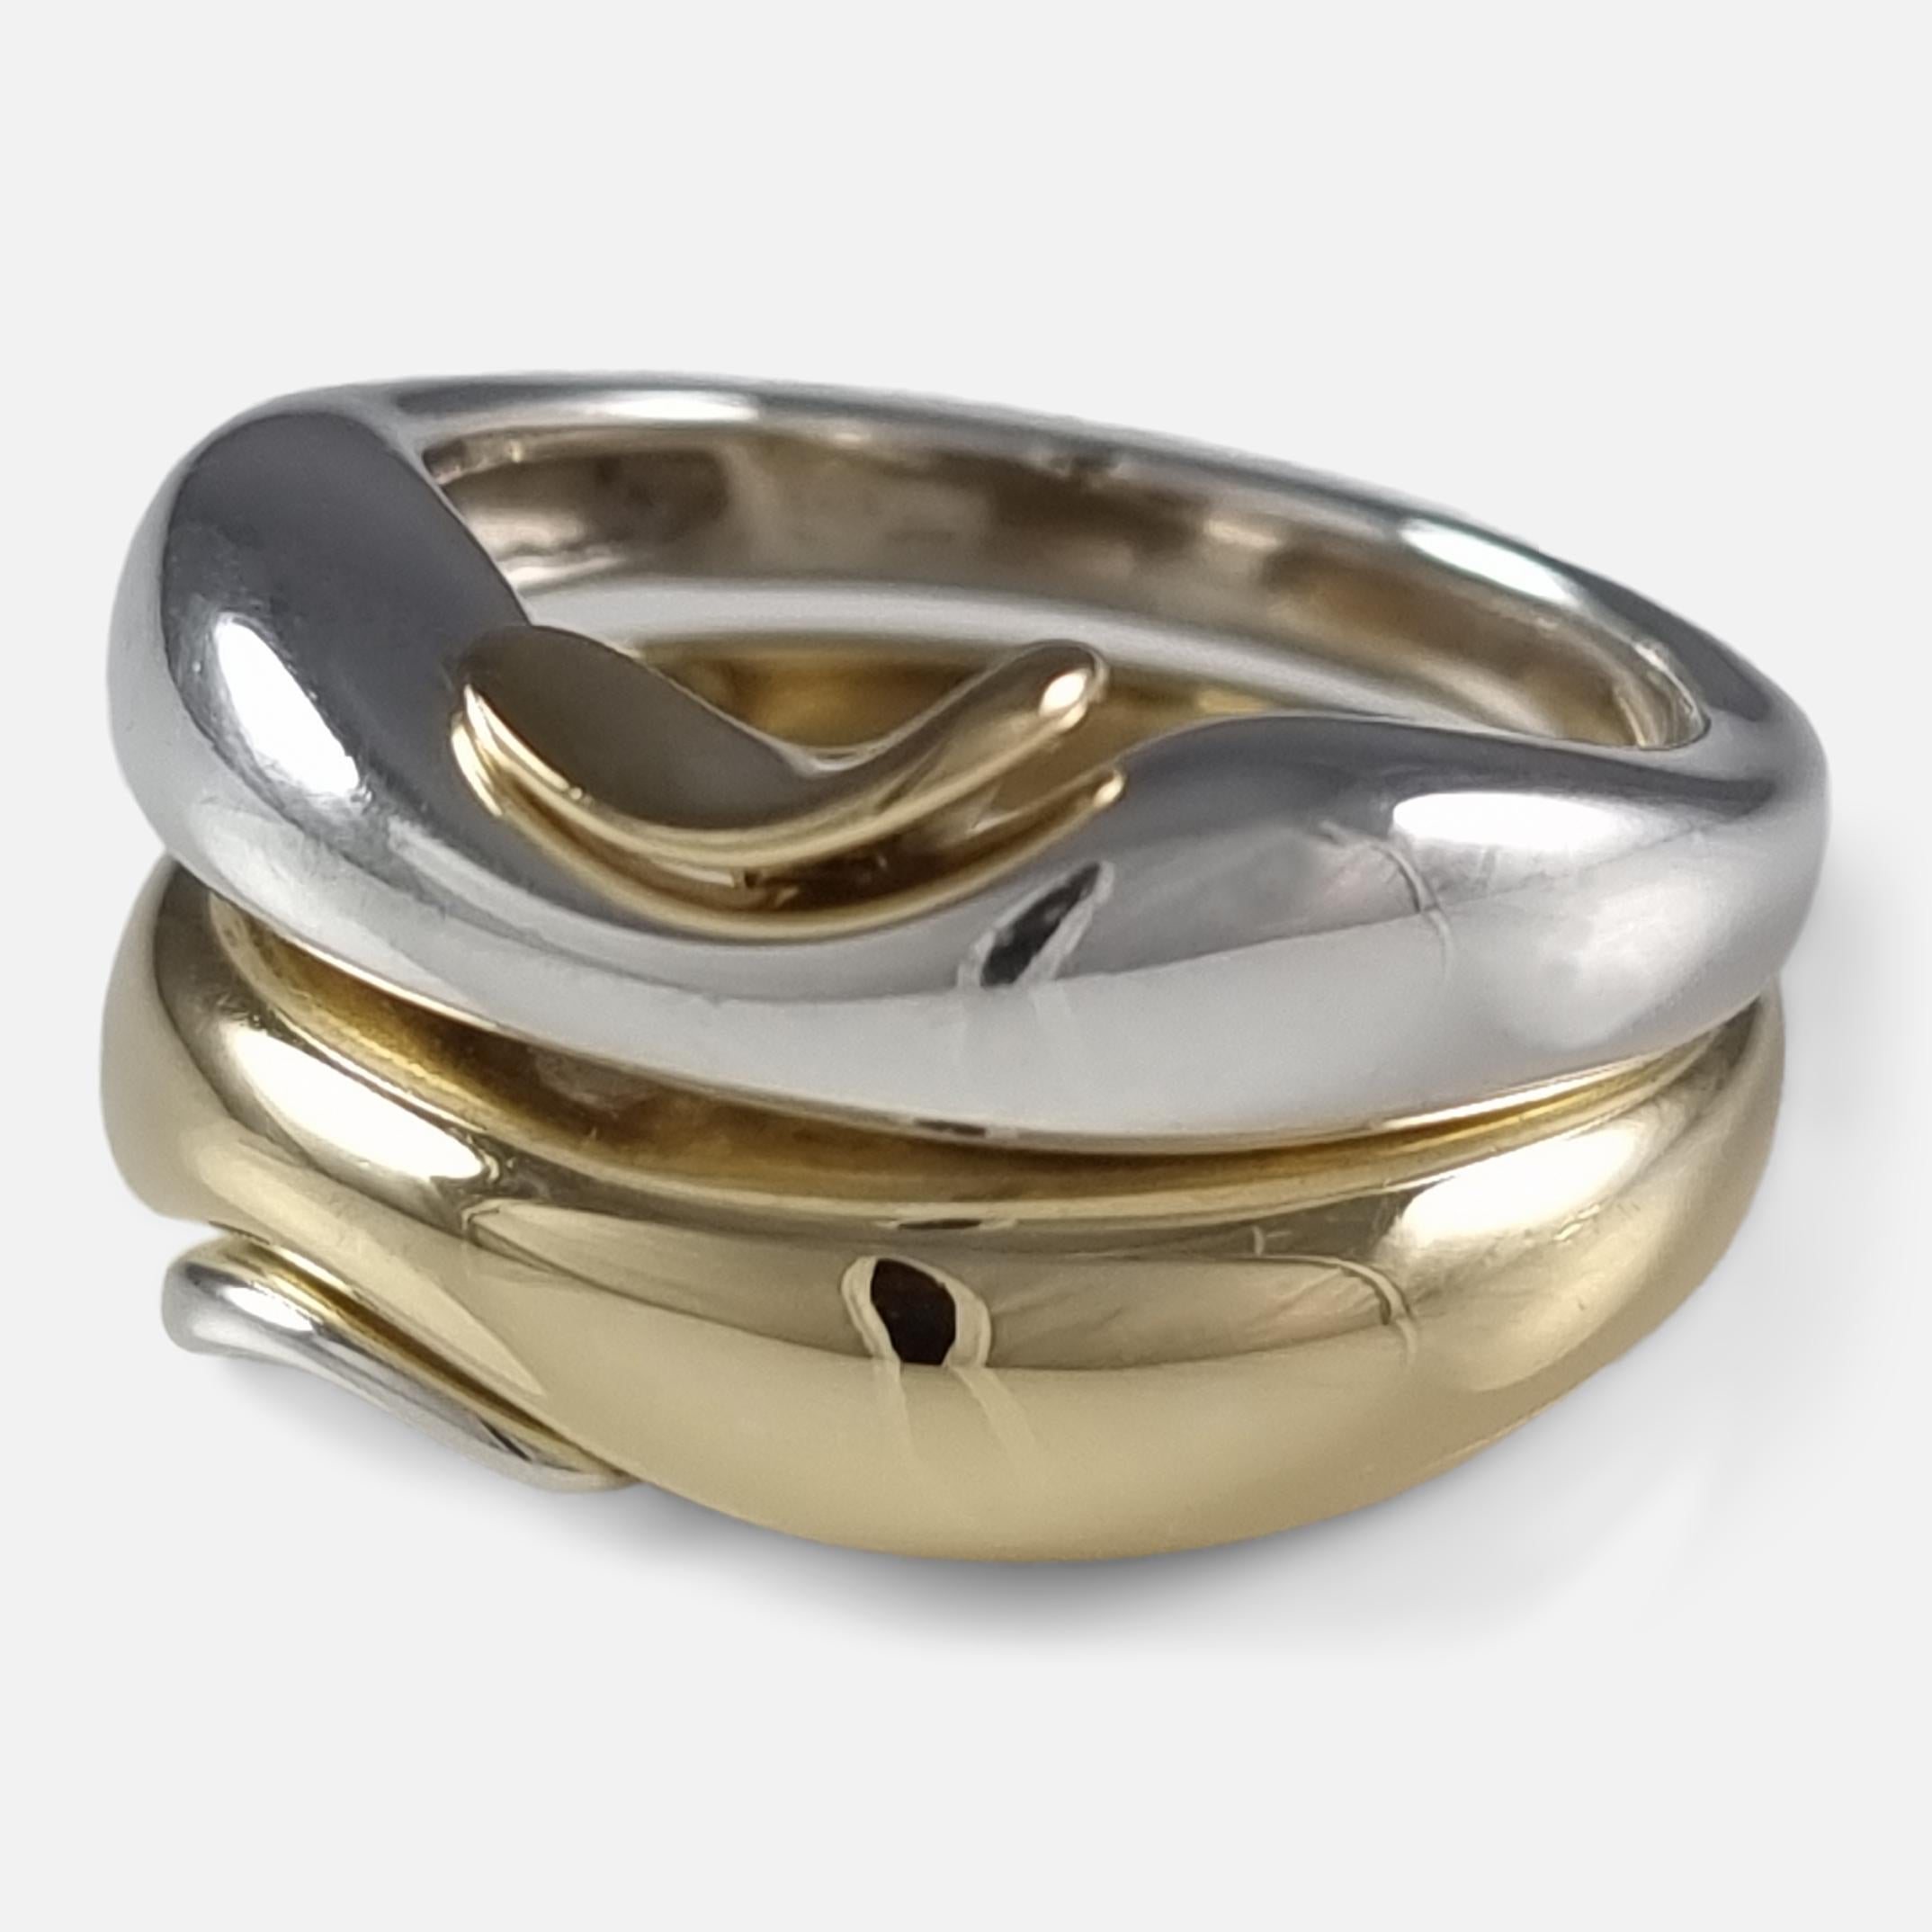 George Jensen 18ct Gold & Silver Ring, Minas Spiridis 3